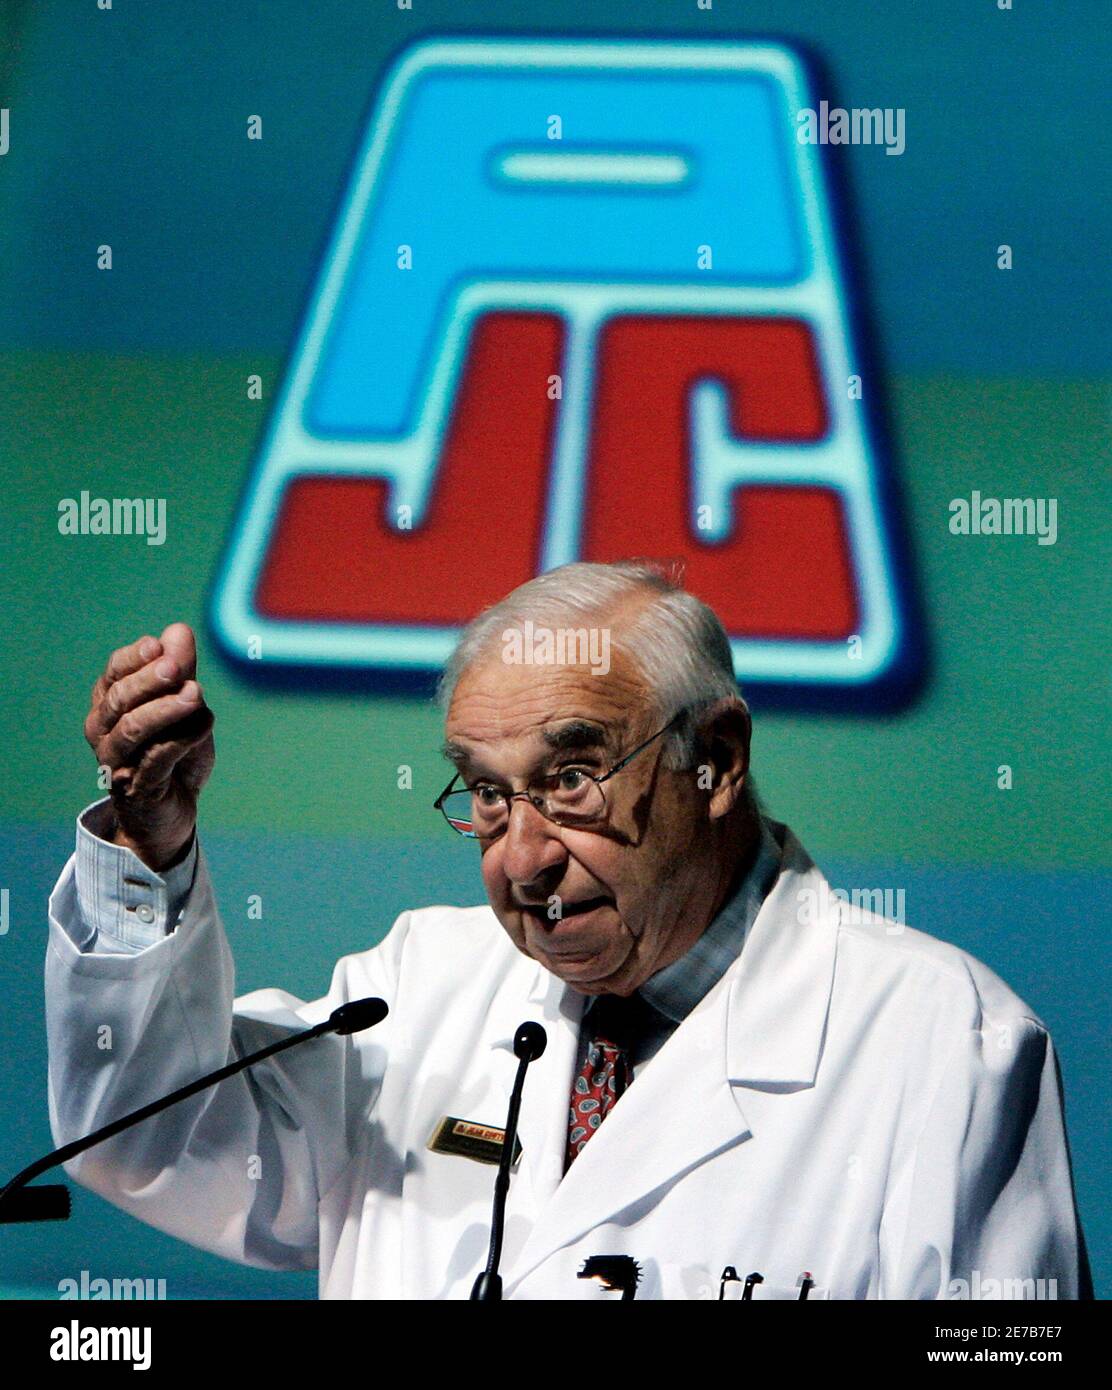 Jean Coutu, président du conseil d'administration du Groupe Jean Coutu,  fait des gestes lors de l'assemblée générale annuelle de l'entreprise à  Montréal dans ce fichier du 15 septembre 2005. Le Groupe Jean